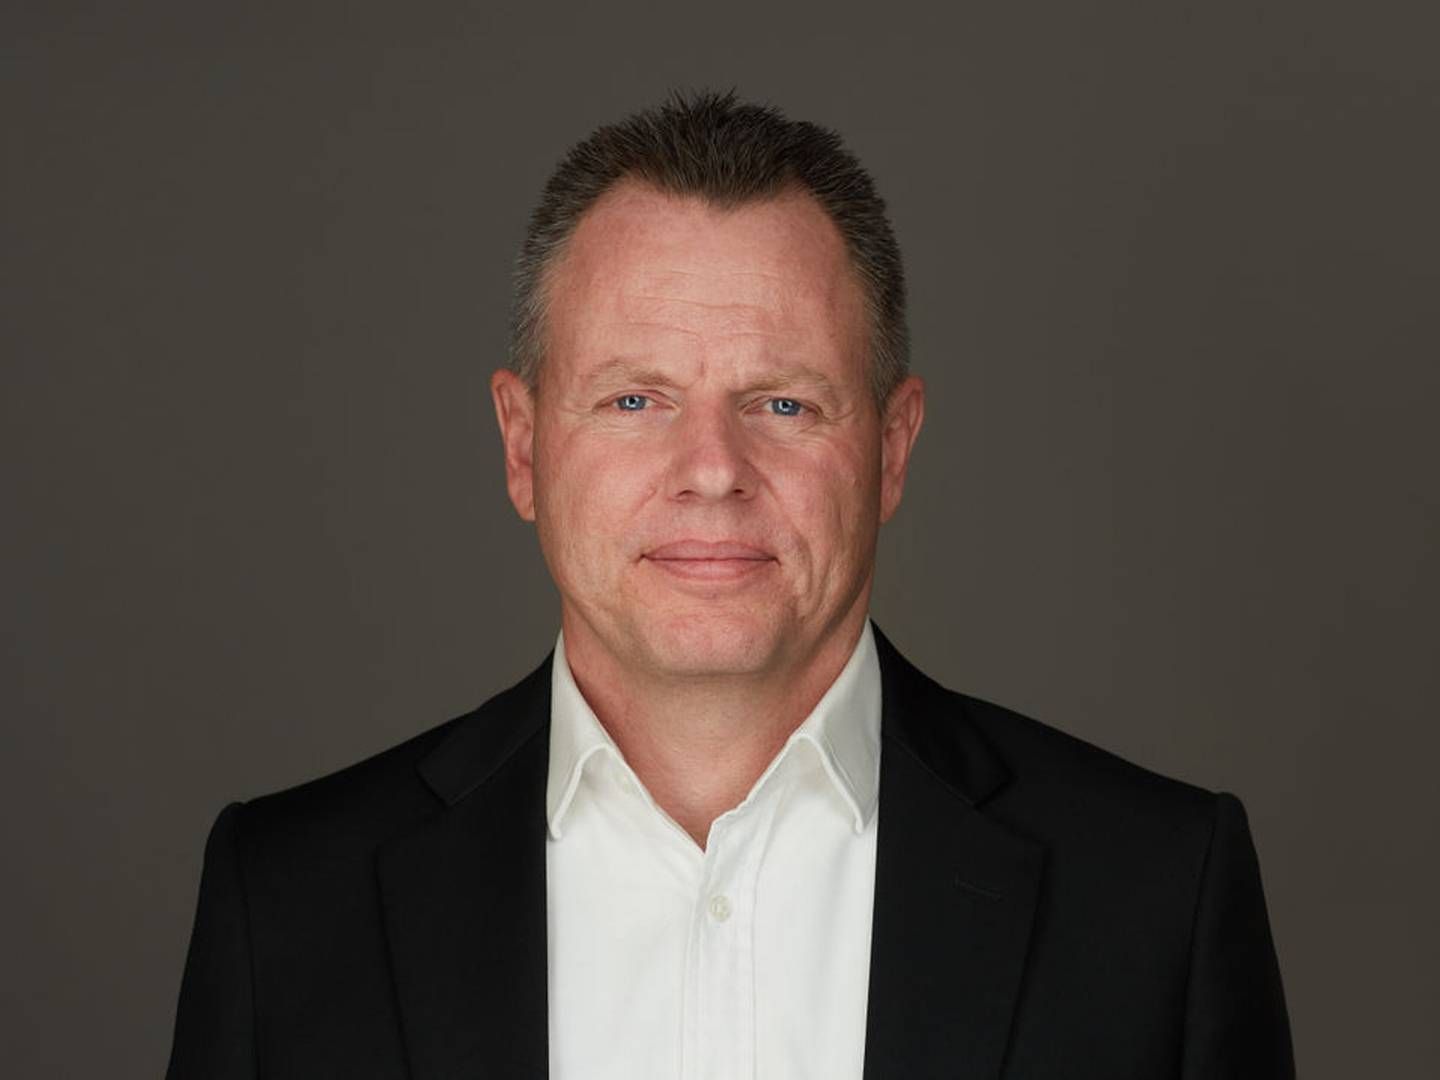 Claus Dahlmann Larsen kom til Mejerigaarden i 2019, hvor han blev kommerciel direktør. Siden fik han titel af at være selskabets adm. direktør. | Foto: Pr/Mejerigaarden